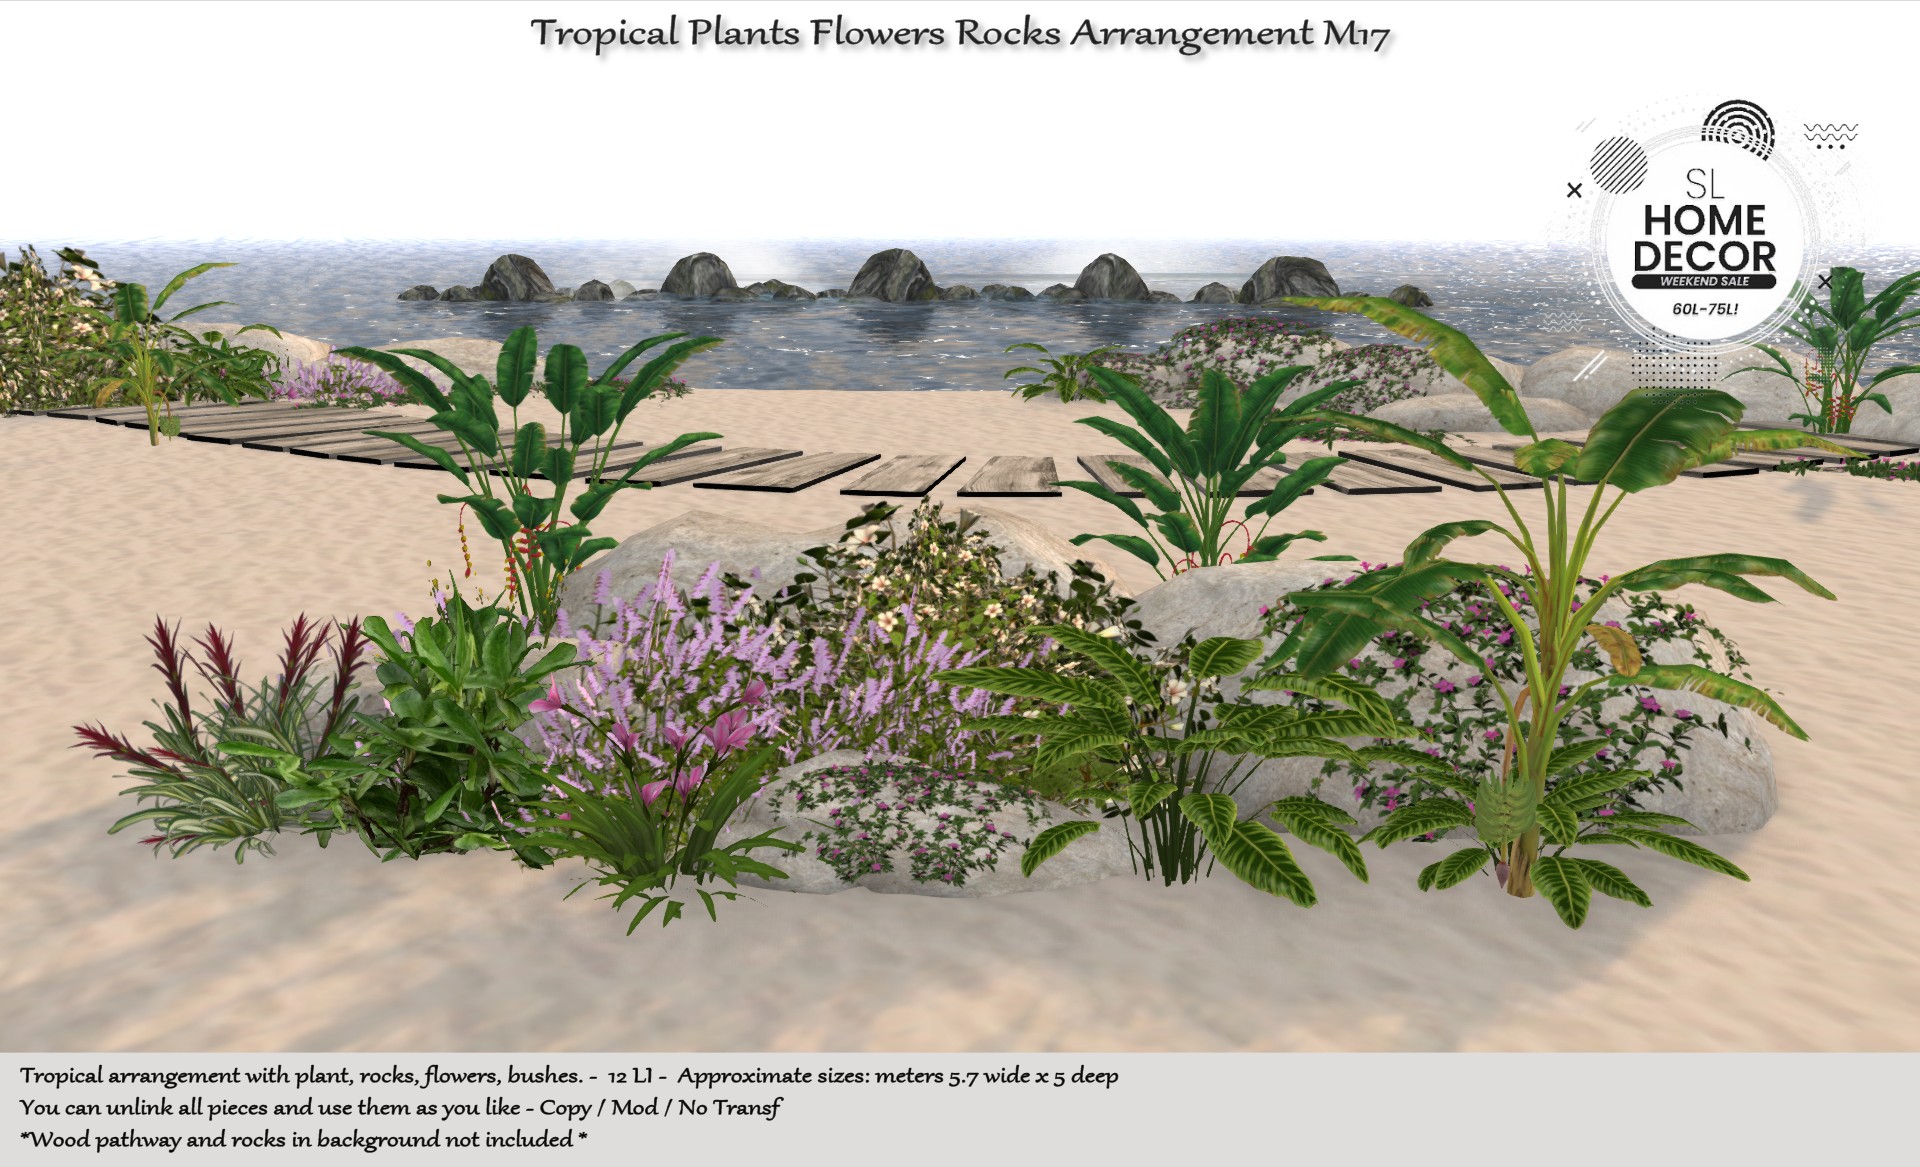 TM Creation – Tropical Plants Flowers Rocks Arrangement M17